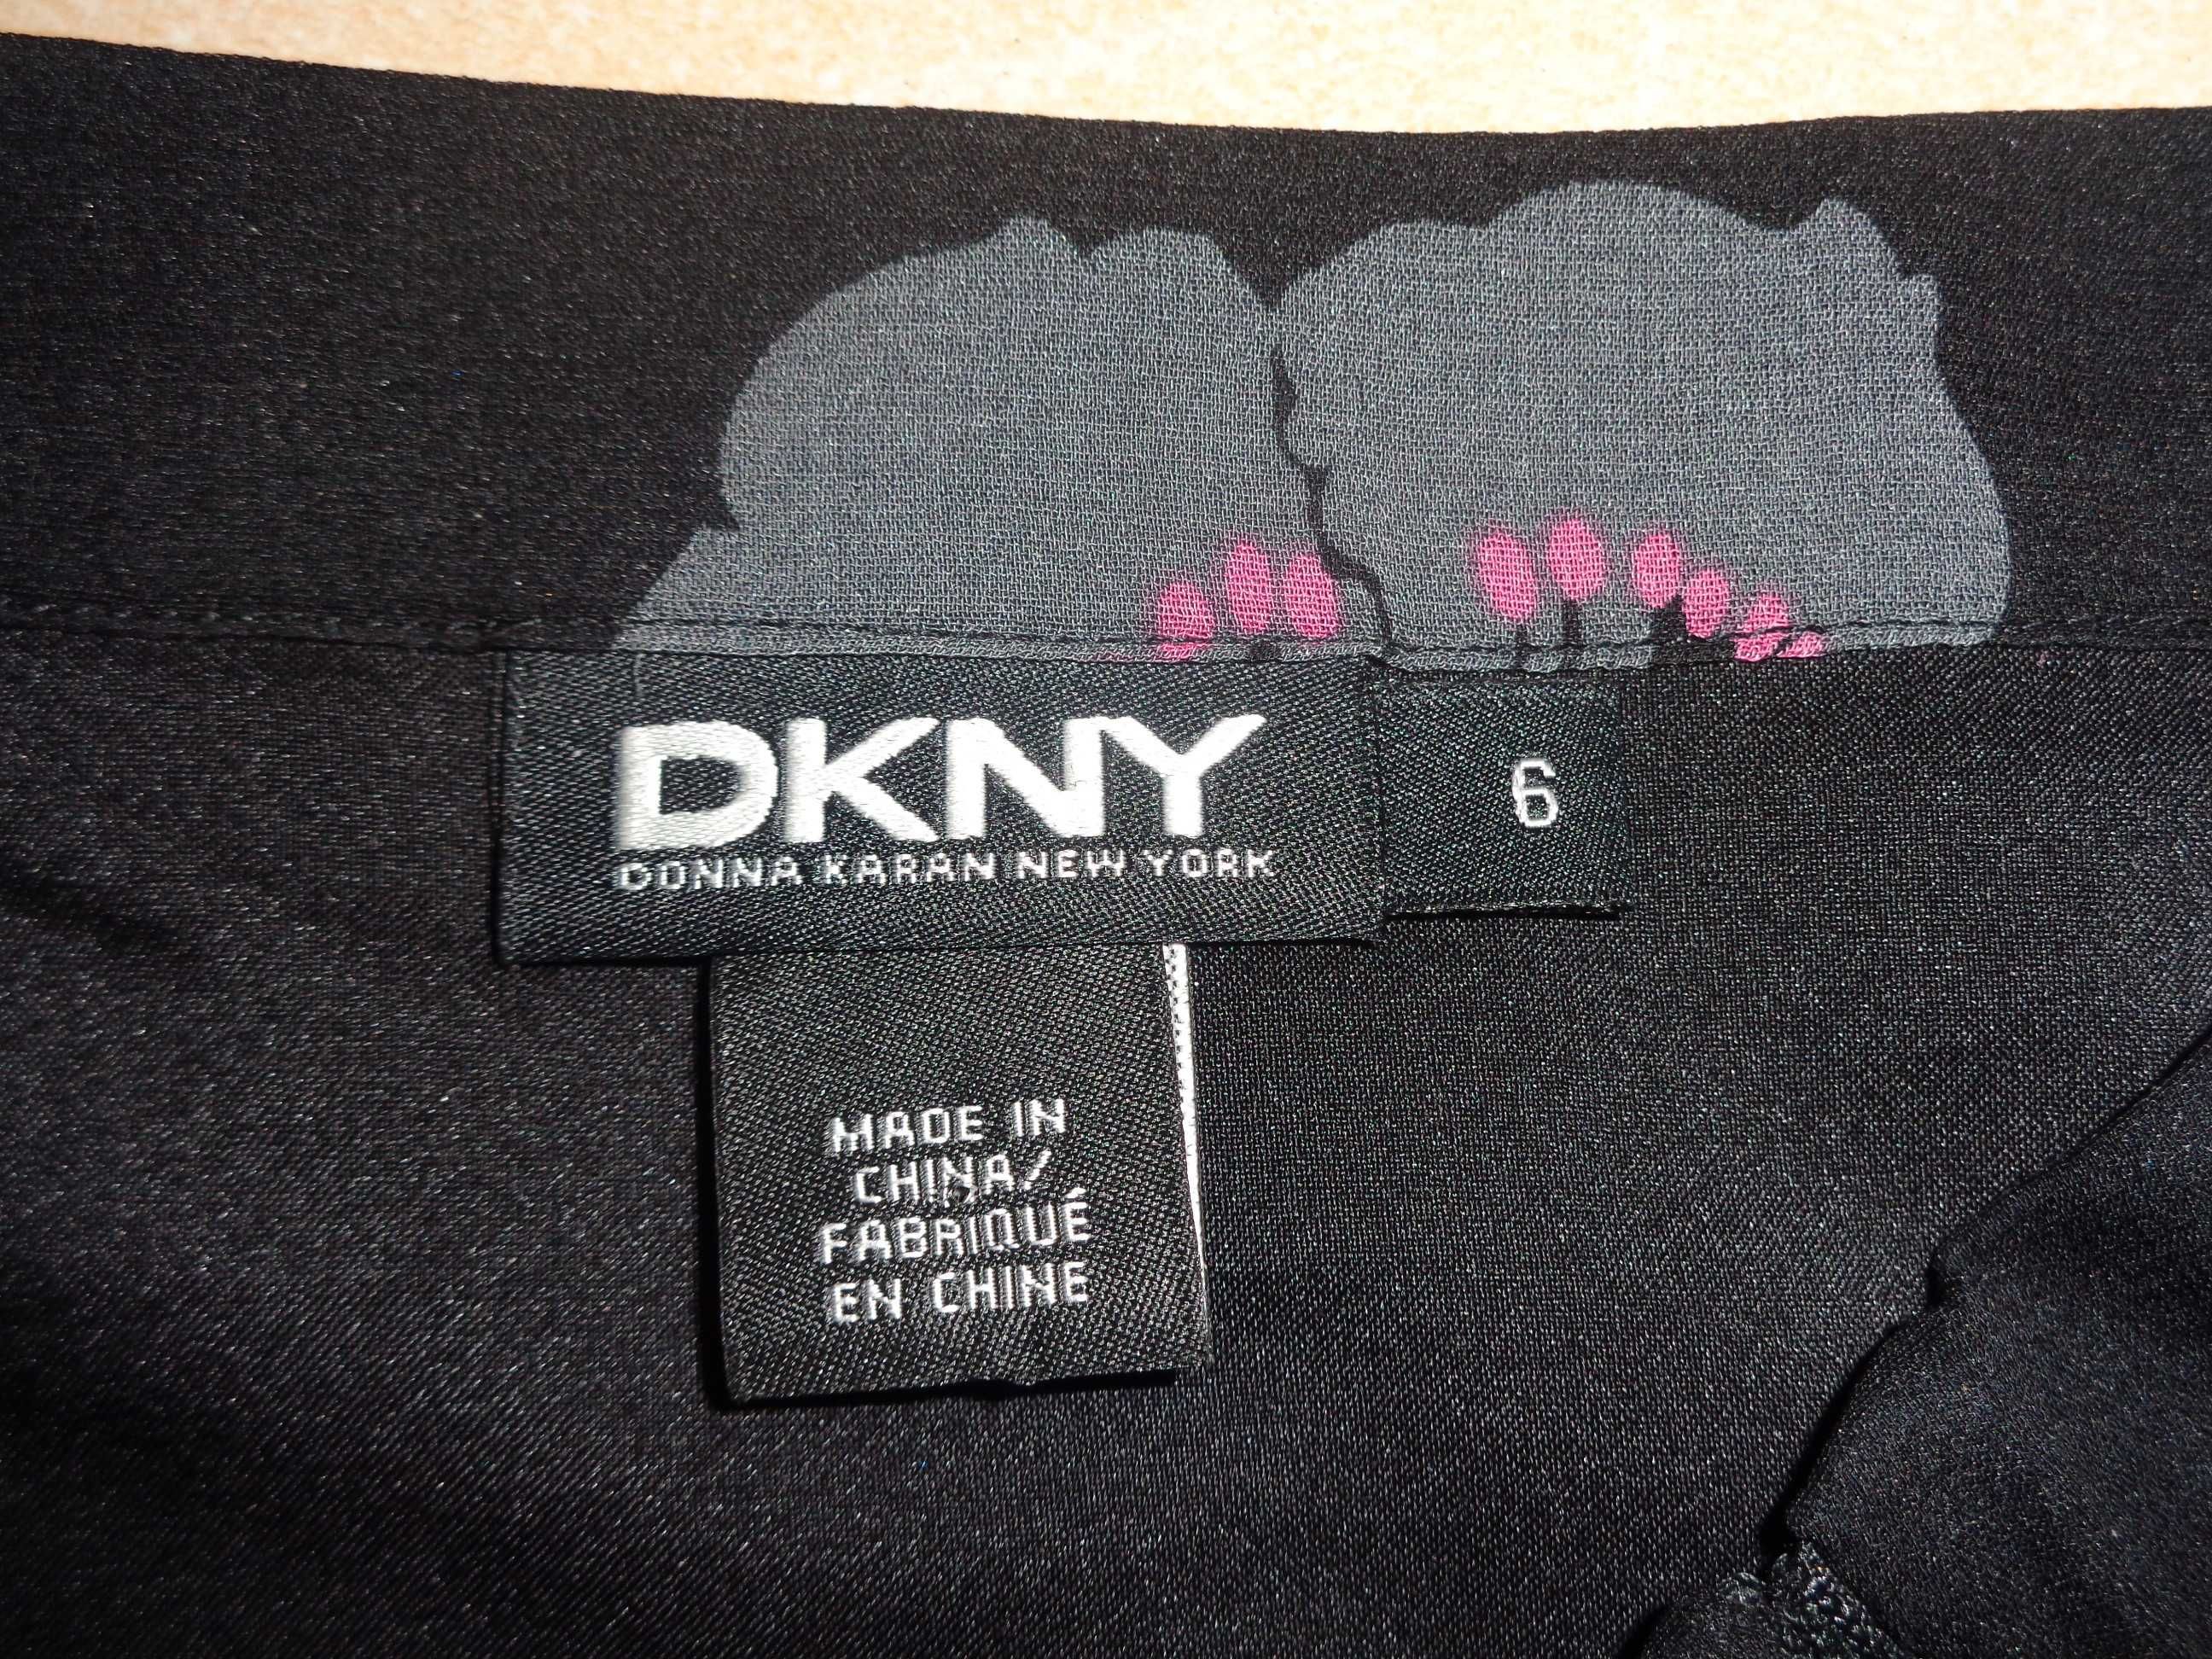 + DKNY oryg. jedwabna rozkloszowana spódnica spódniczka SILK jedwab